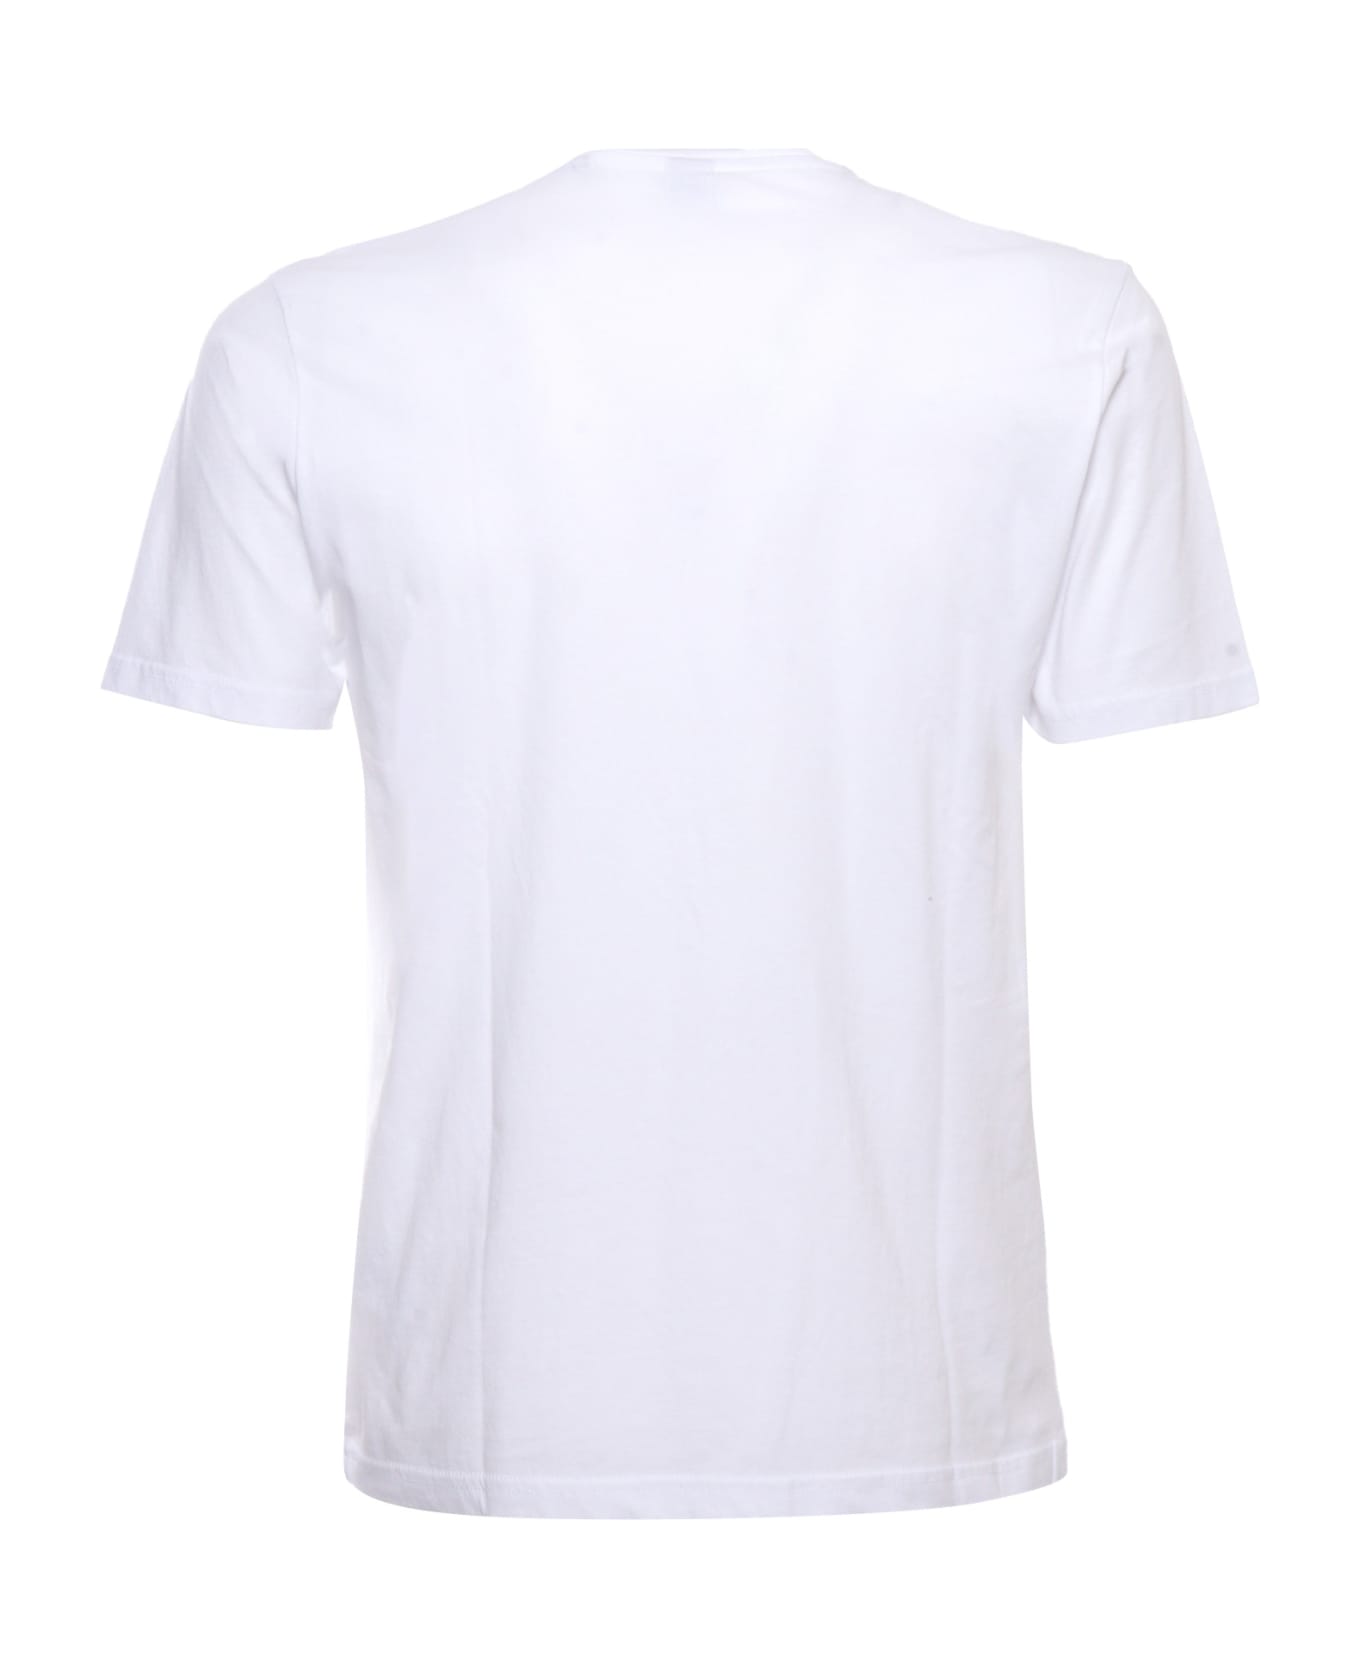 Aspesi White Jersey T-shirt - WHITE シャツ